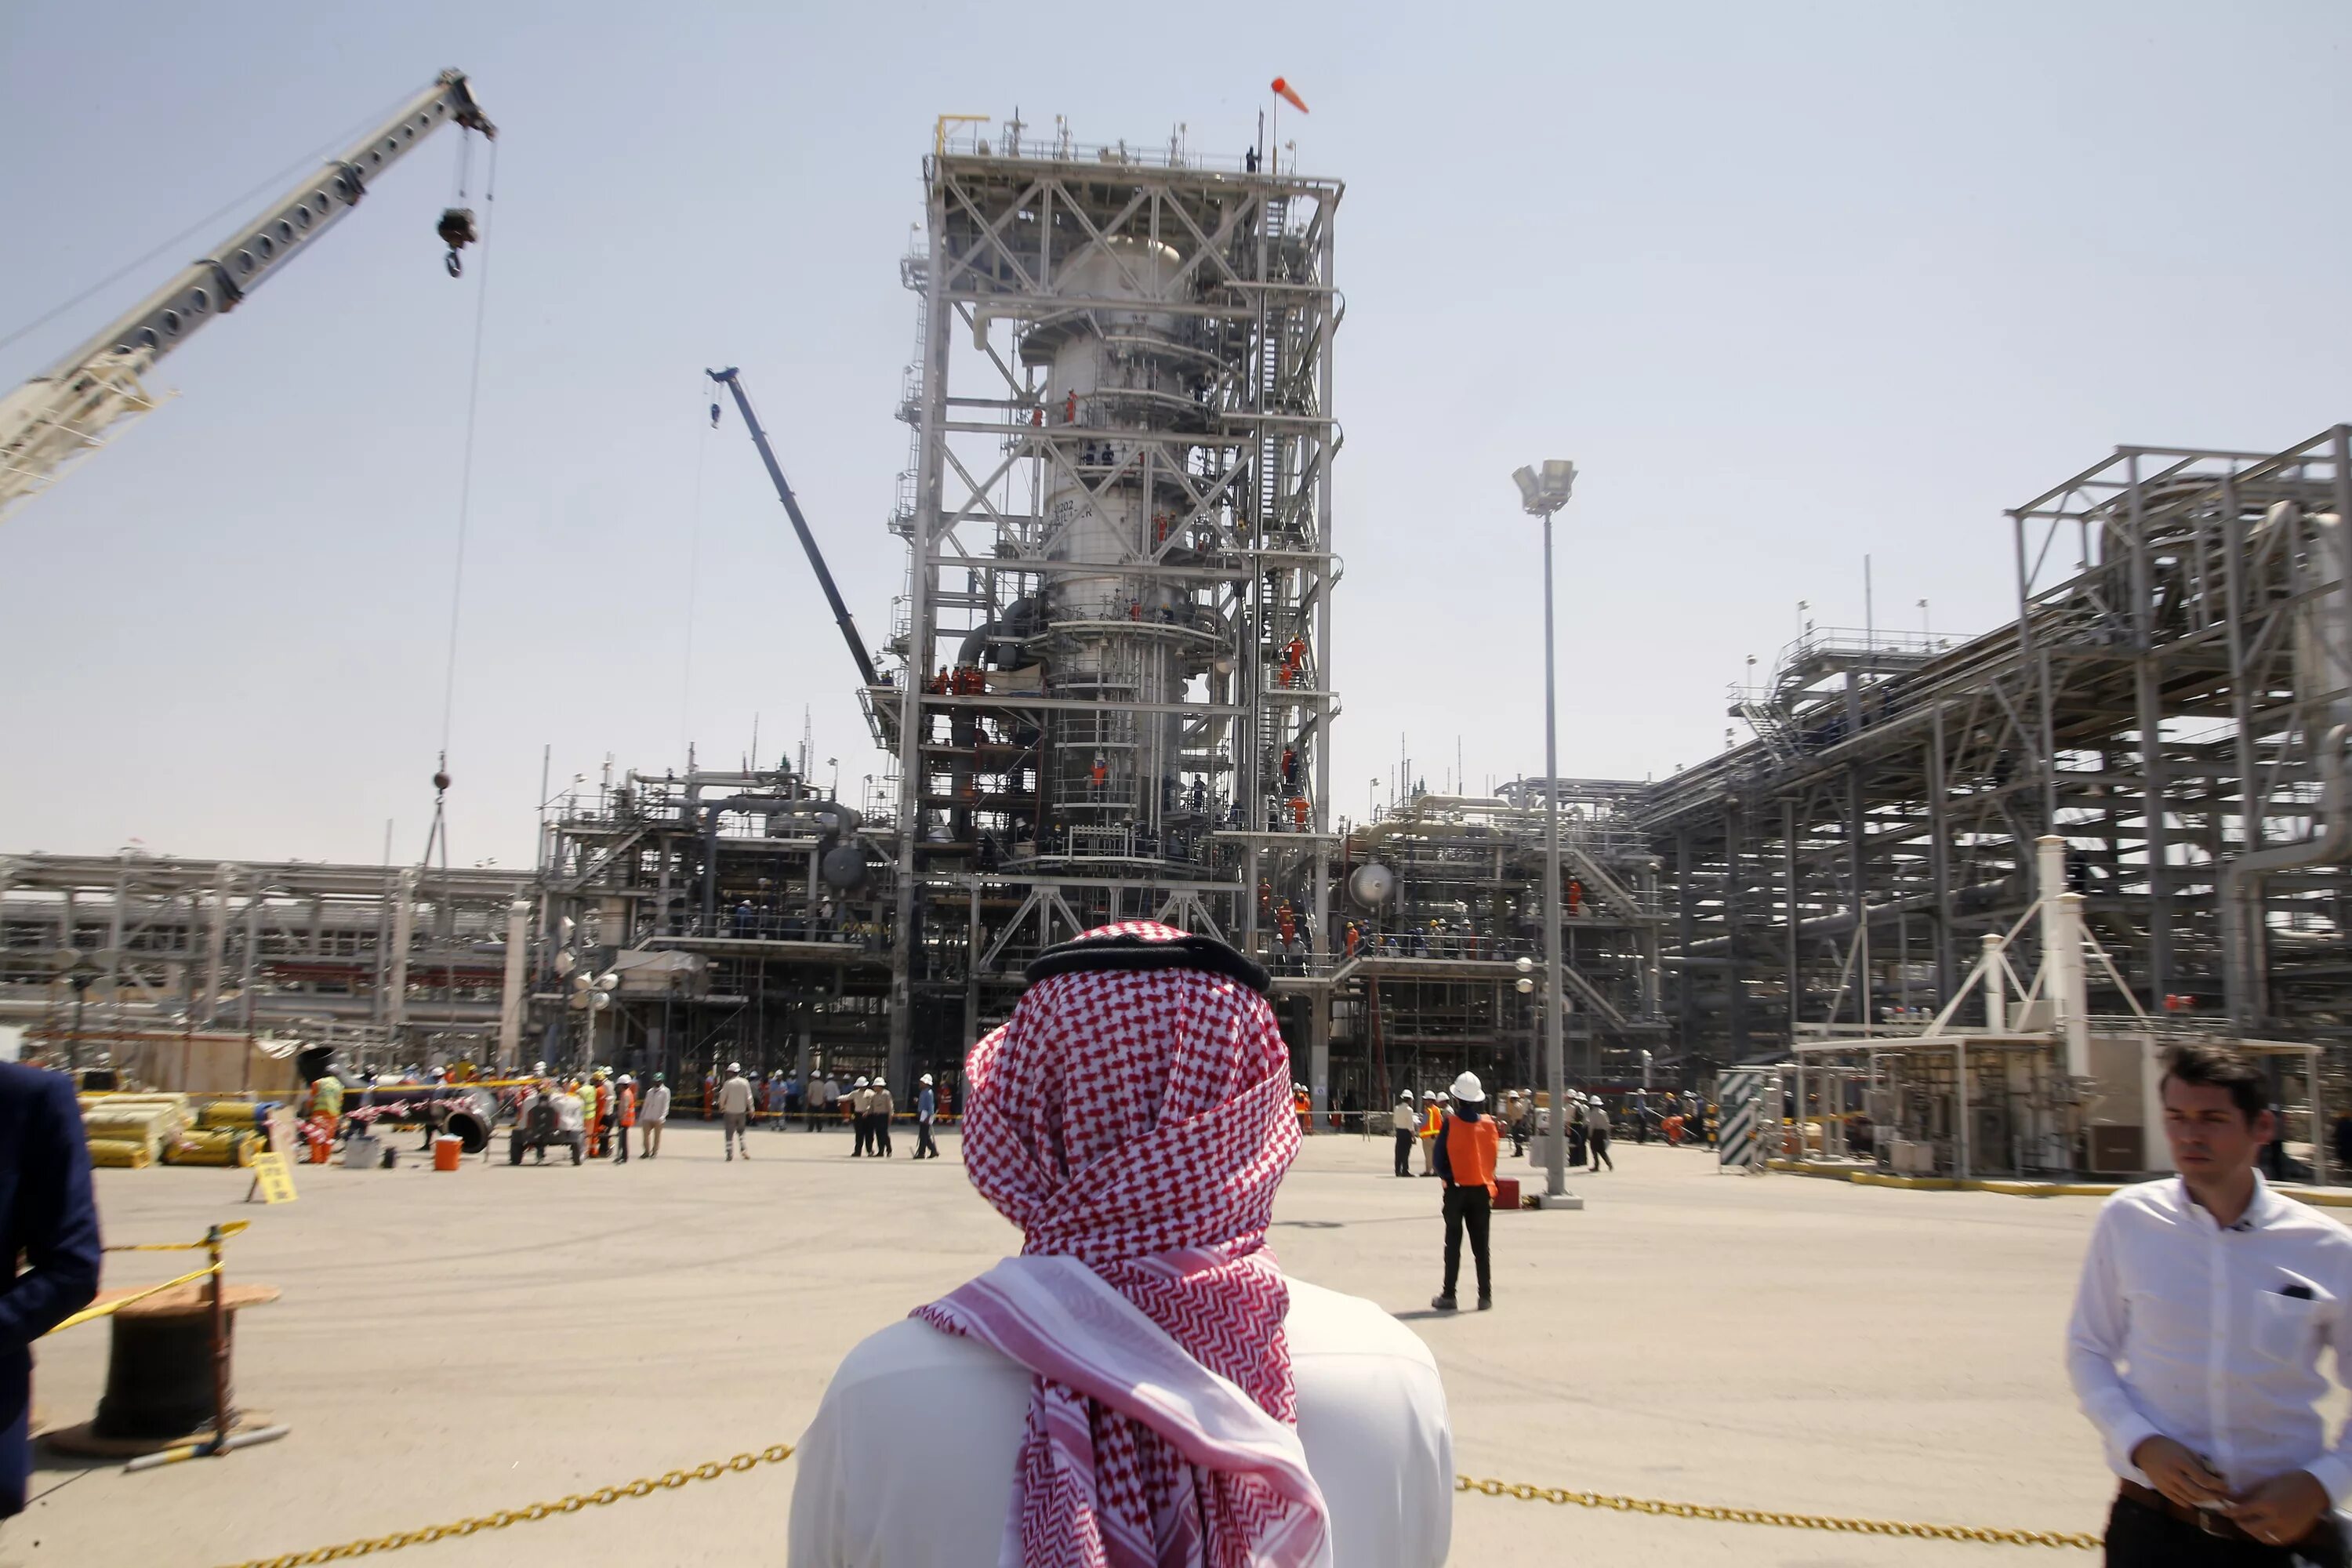 Саудовская аравия готова. Нефтеперерабатывающий завод в Саудовской Аравии. Объединённые арабские эмираты добыча нефти. Саудовская Аравия нефтедобыча. Нефтедобыча в ОАЭ.